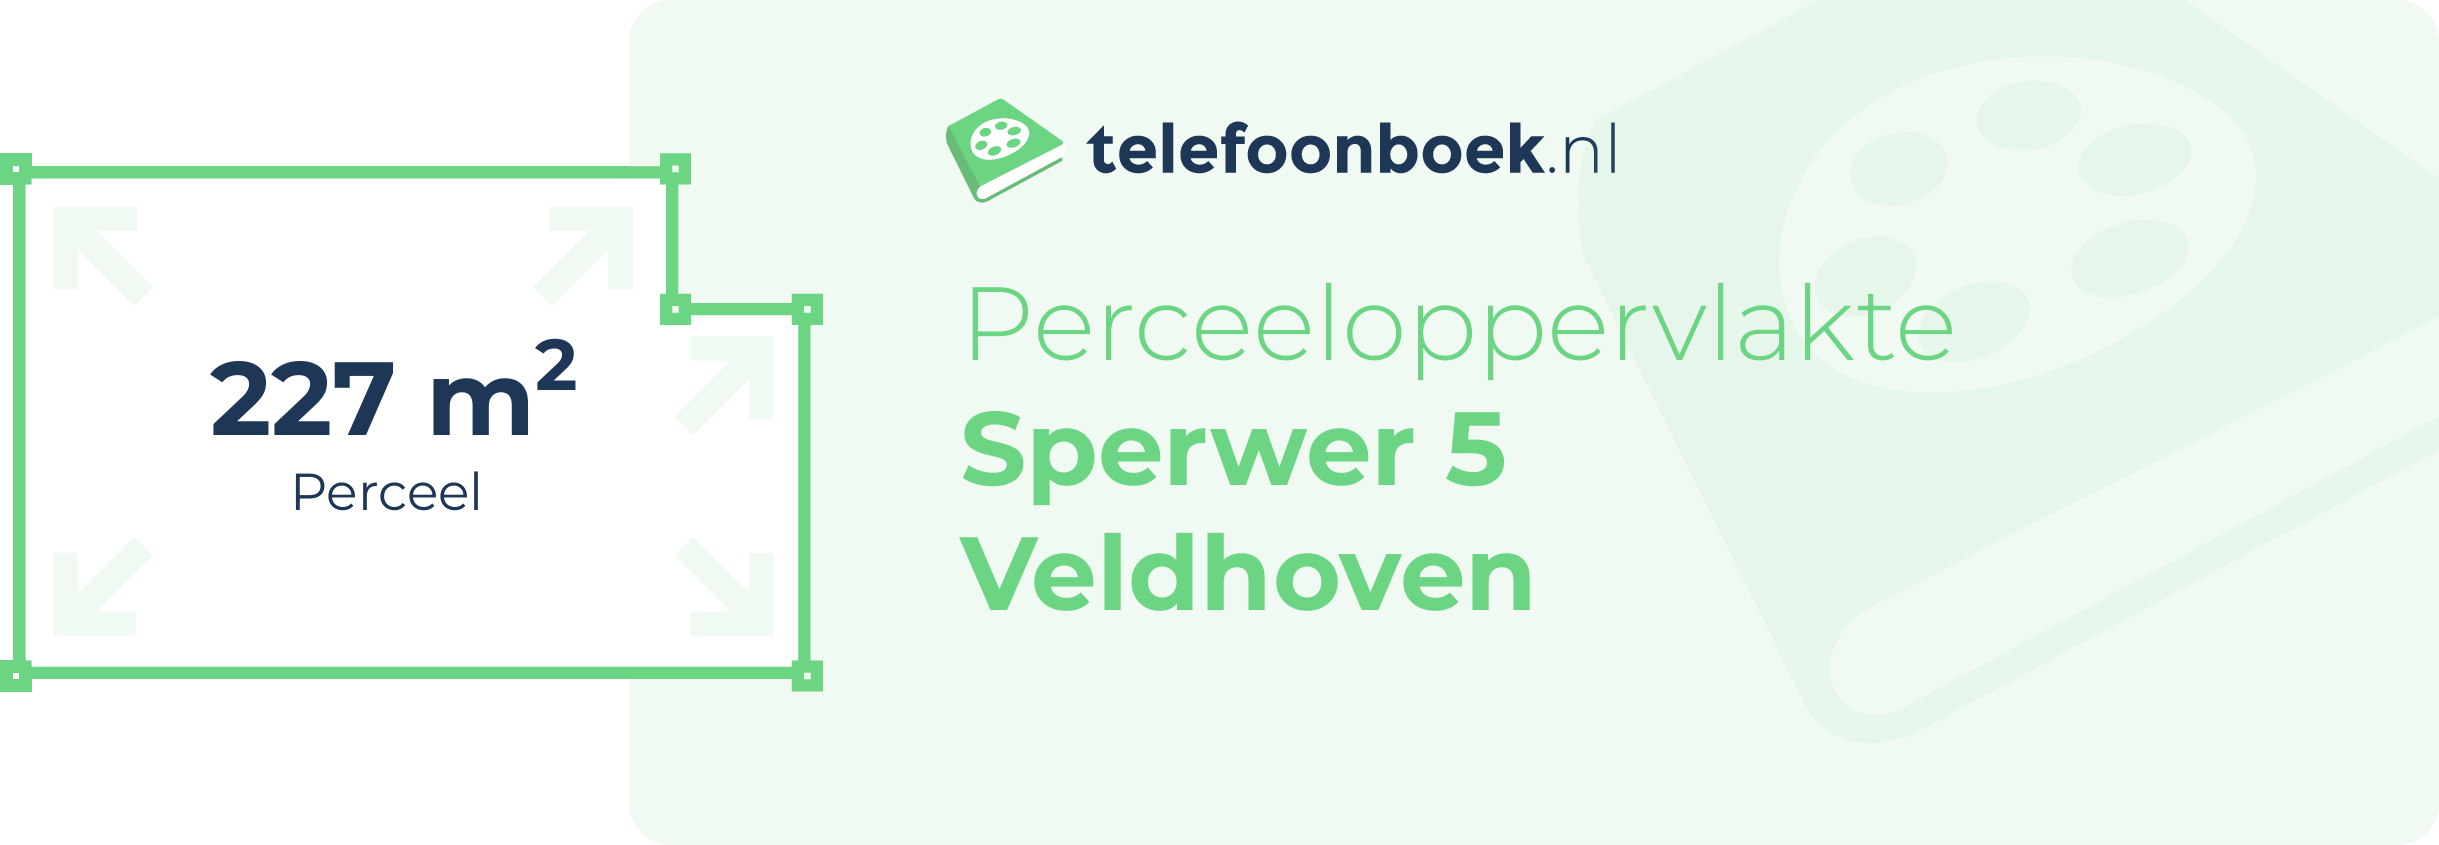 Perceeloppervlakte Sperwer 5 Veldhoven